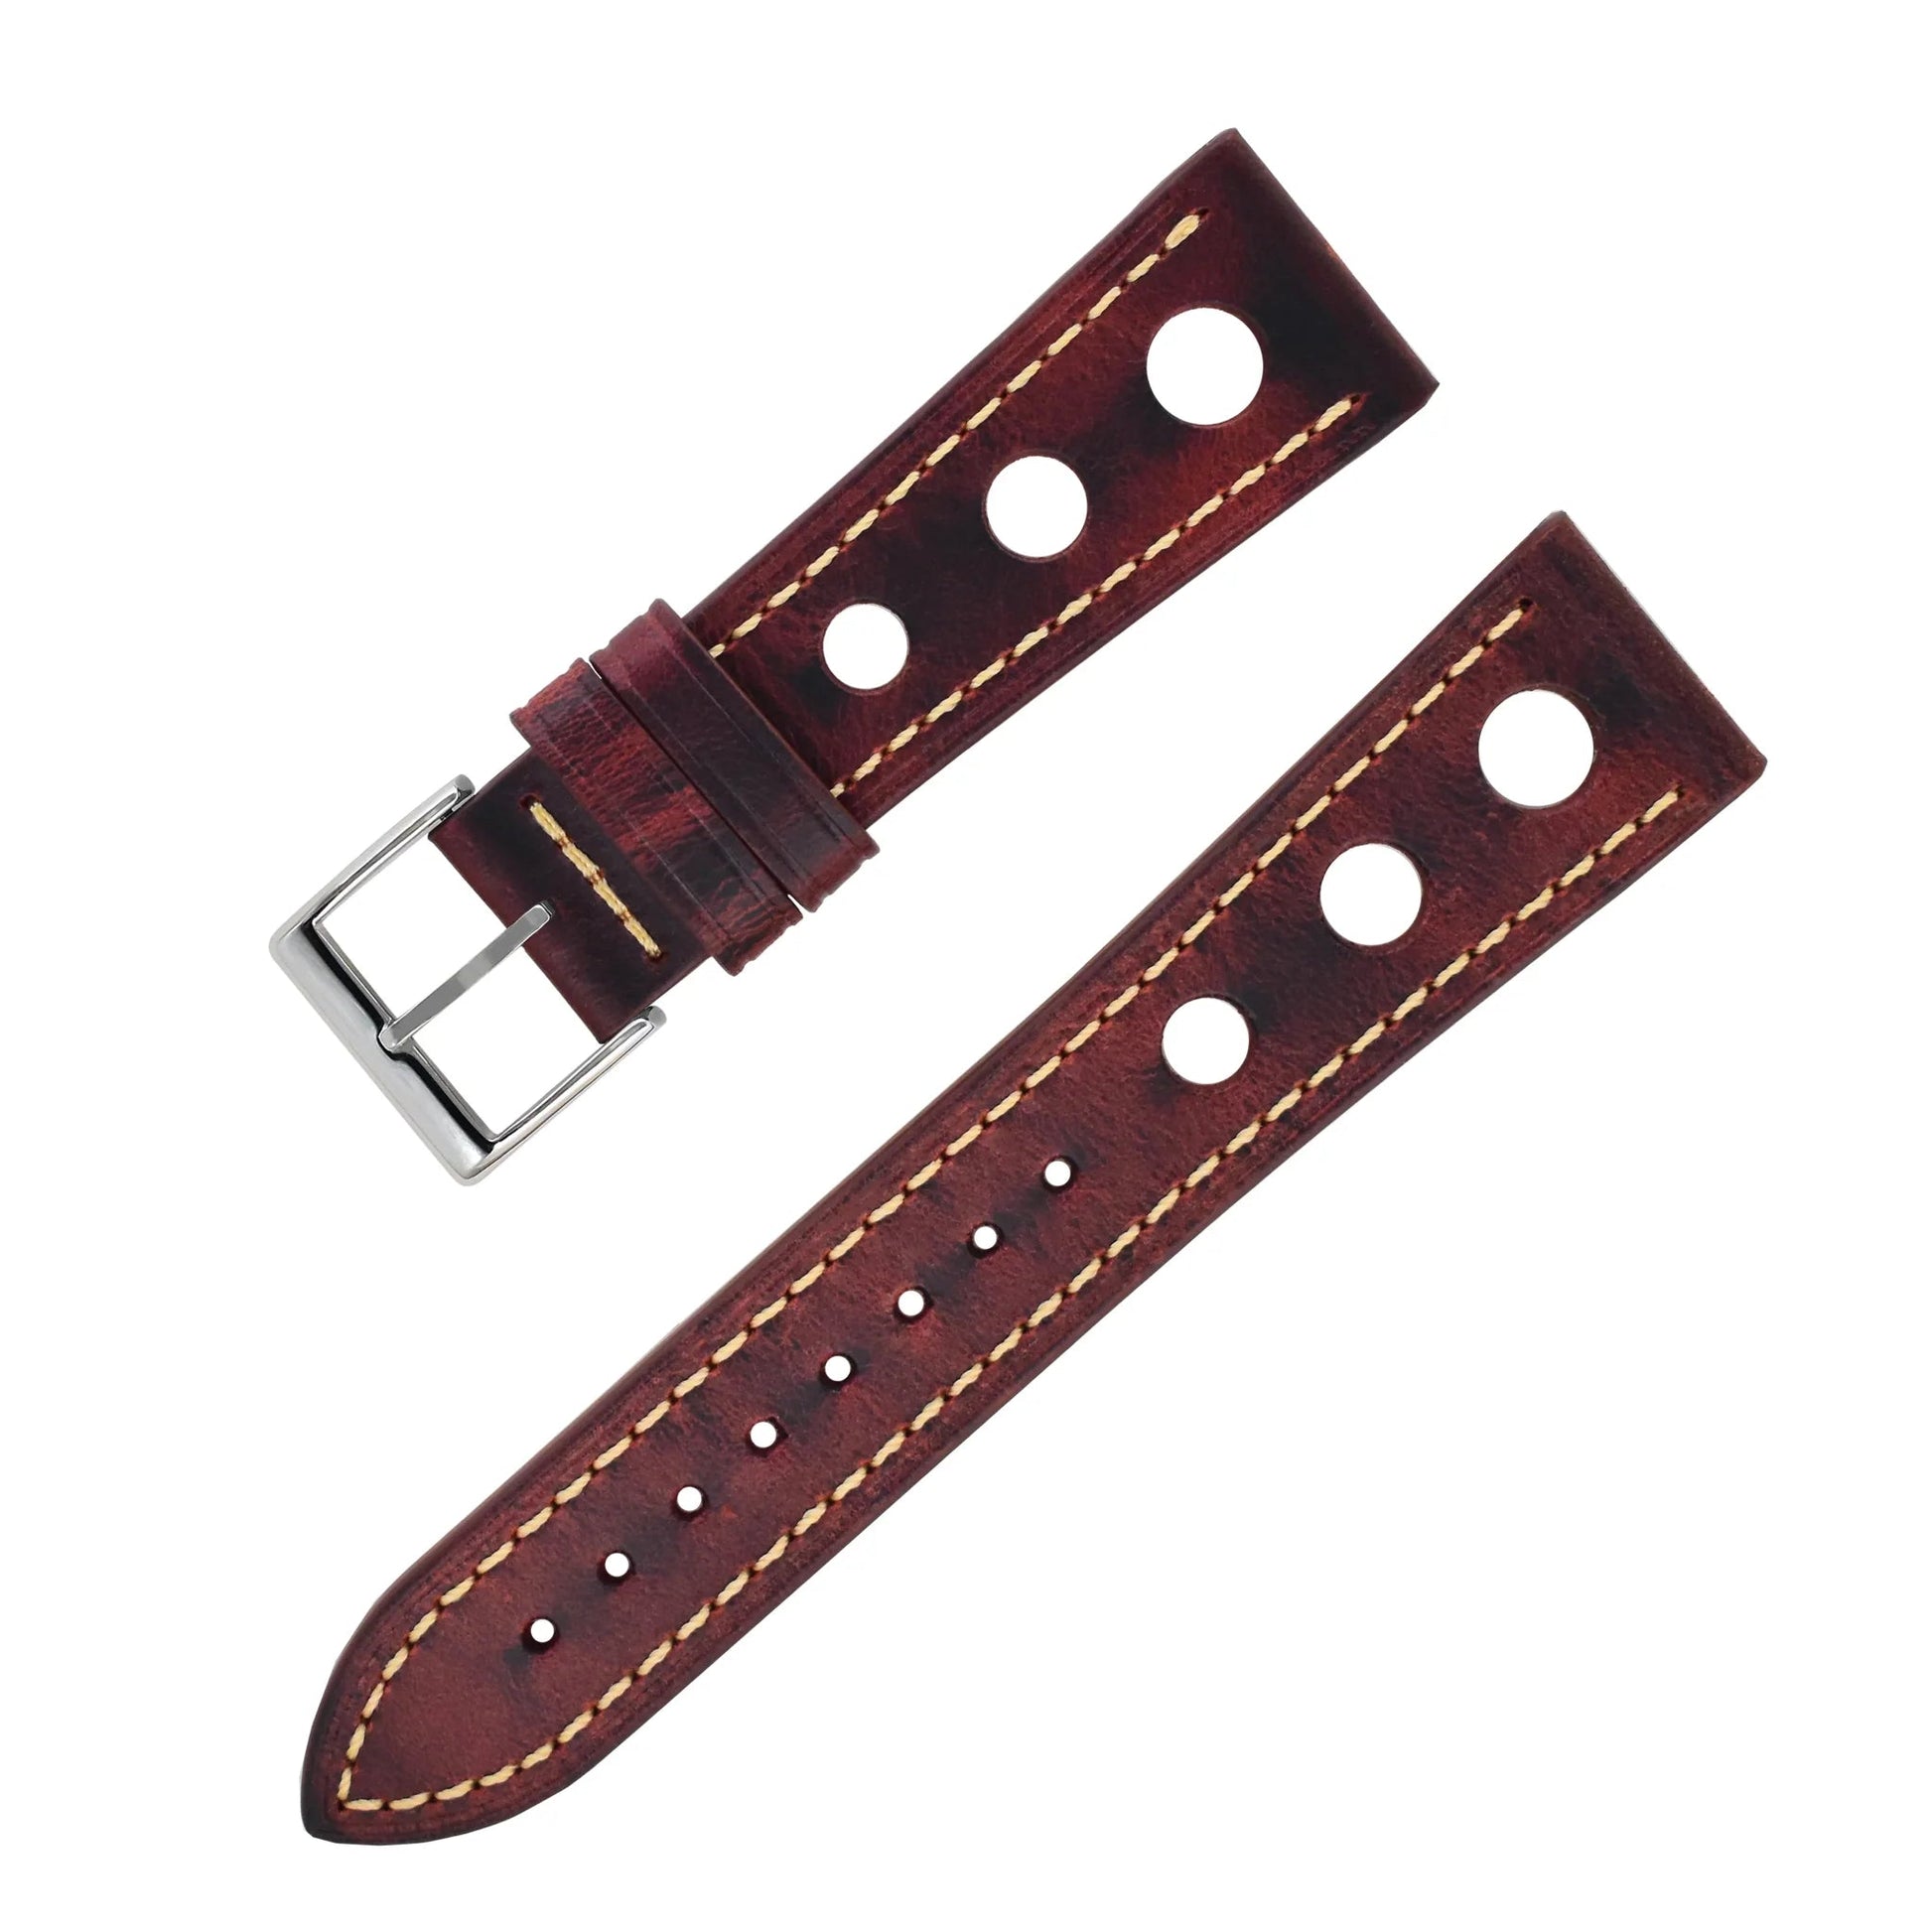 Bracelet montre cuir Racer - MONTRE A PAPY - Montre automatique seiko mod 18mmWine red